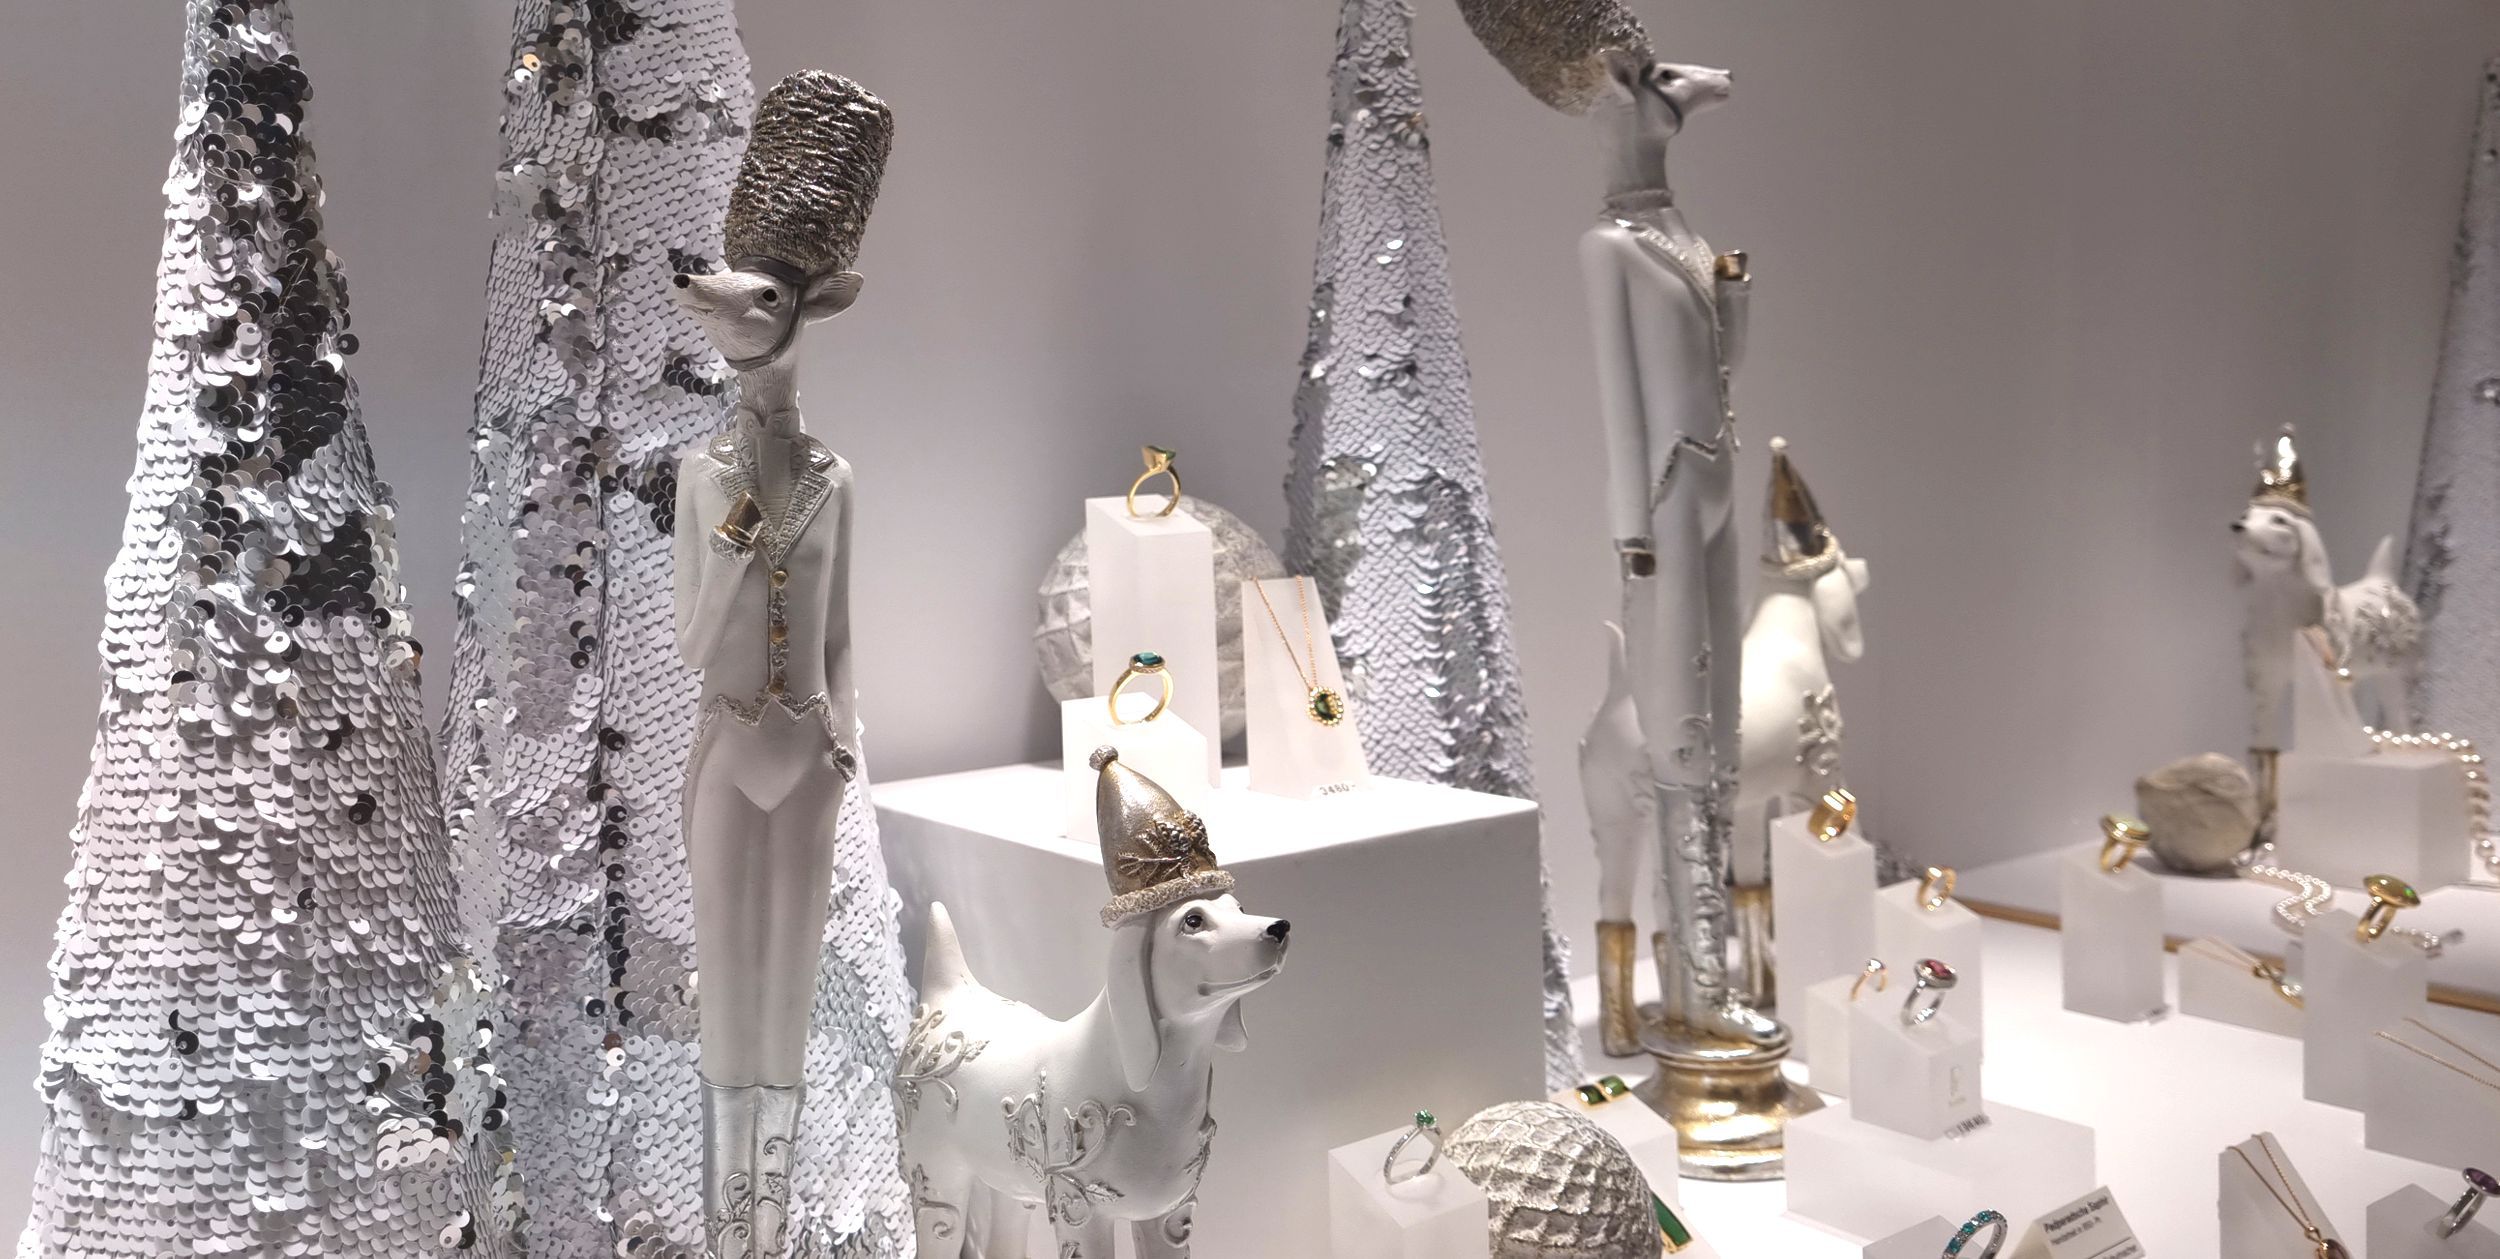 Schoene und Frohe Weihnachten wuenscht Juwelier Schumacher die Schmuckmanufaktur